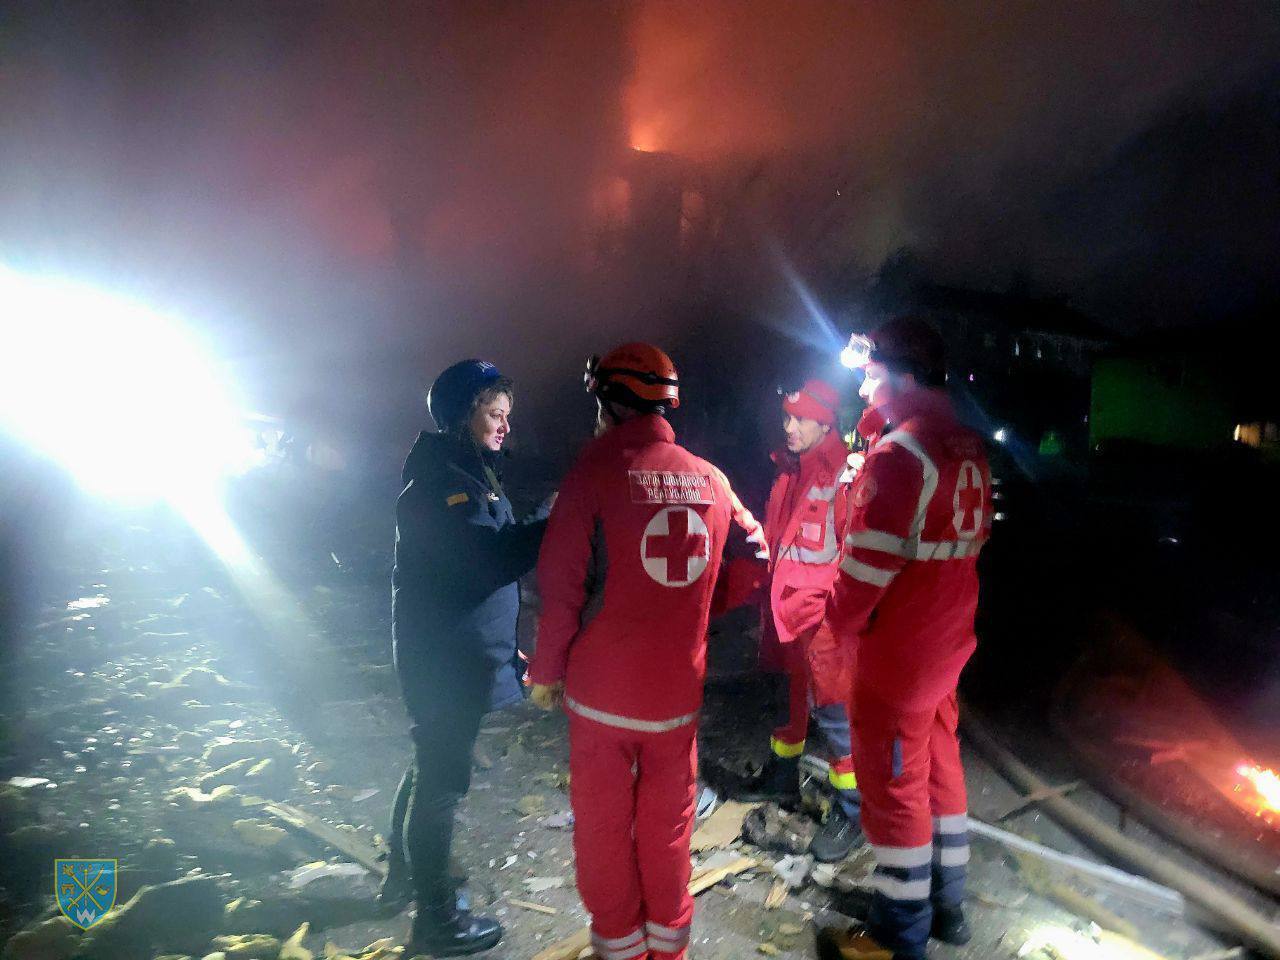 В Одессе вспыхнул пожар из-за атаки БПЛА: есть погибшие и разрушения. Фото и видео